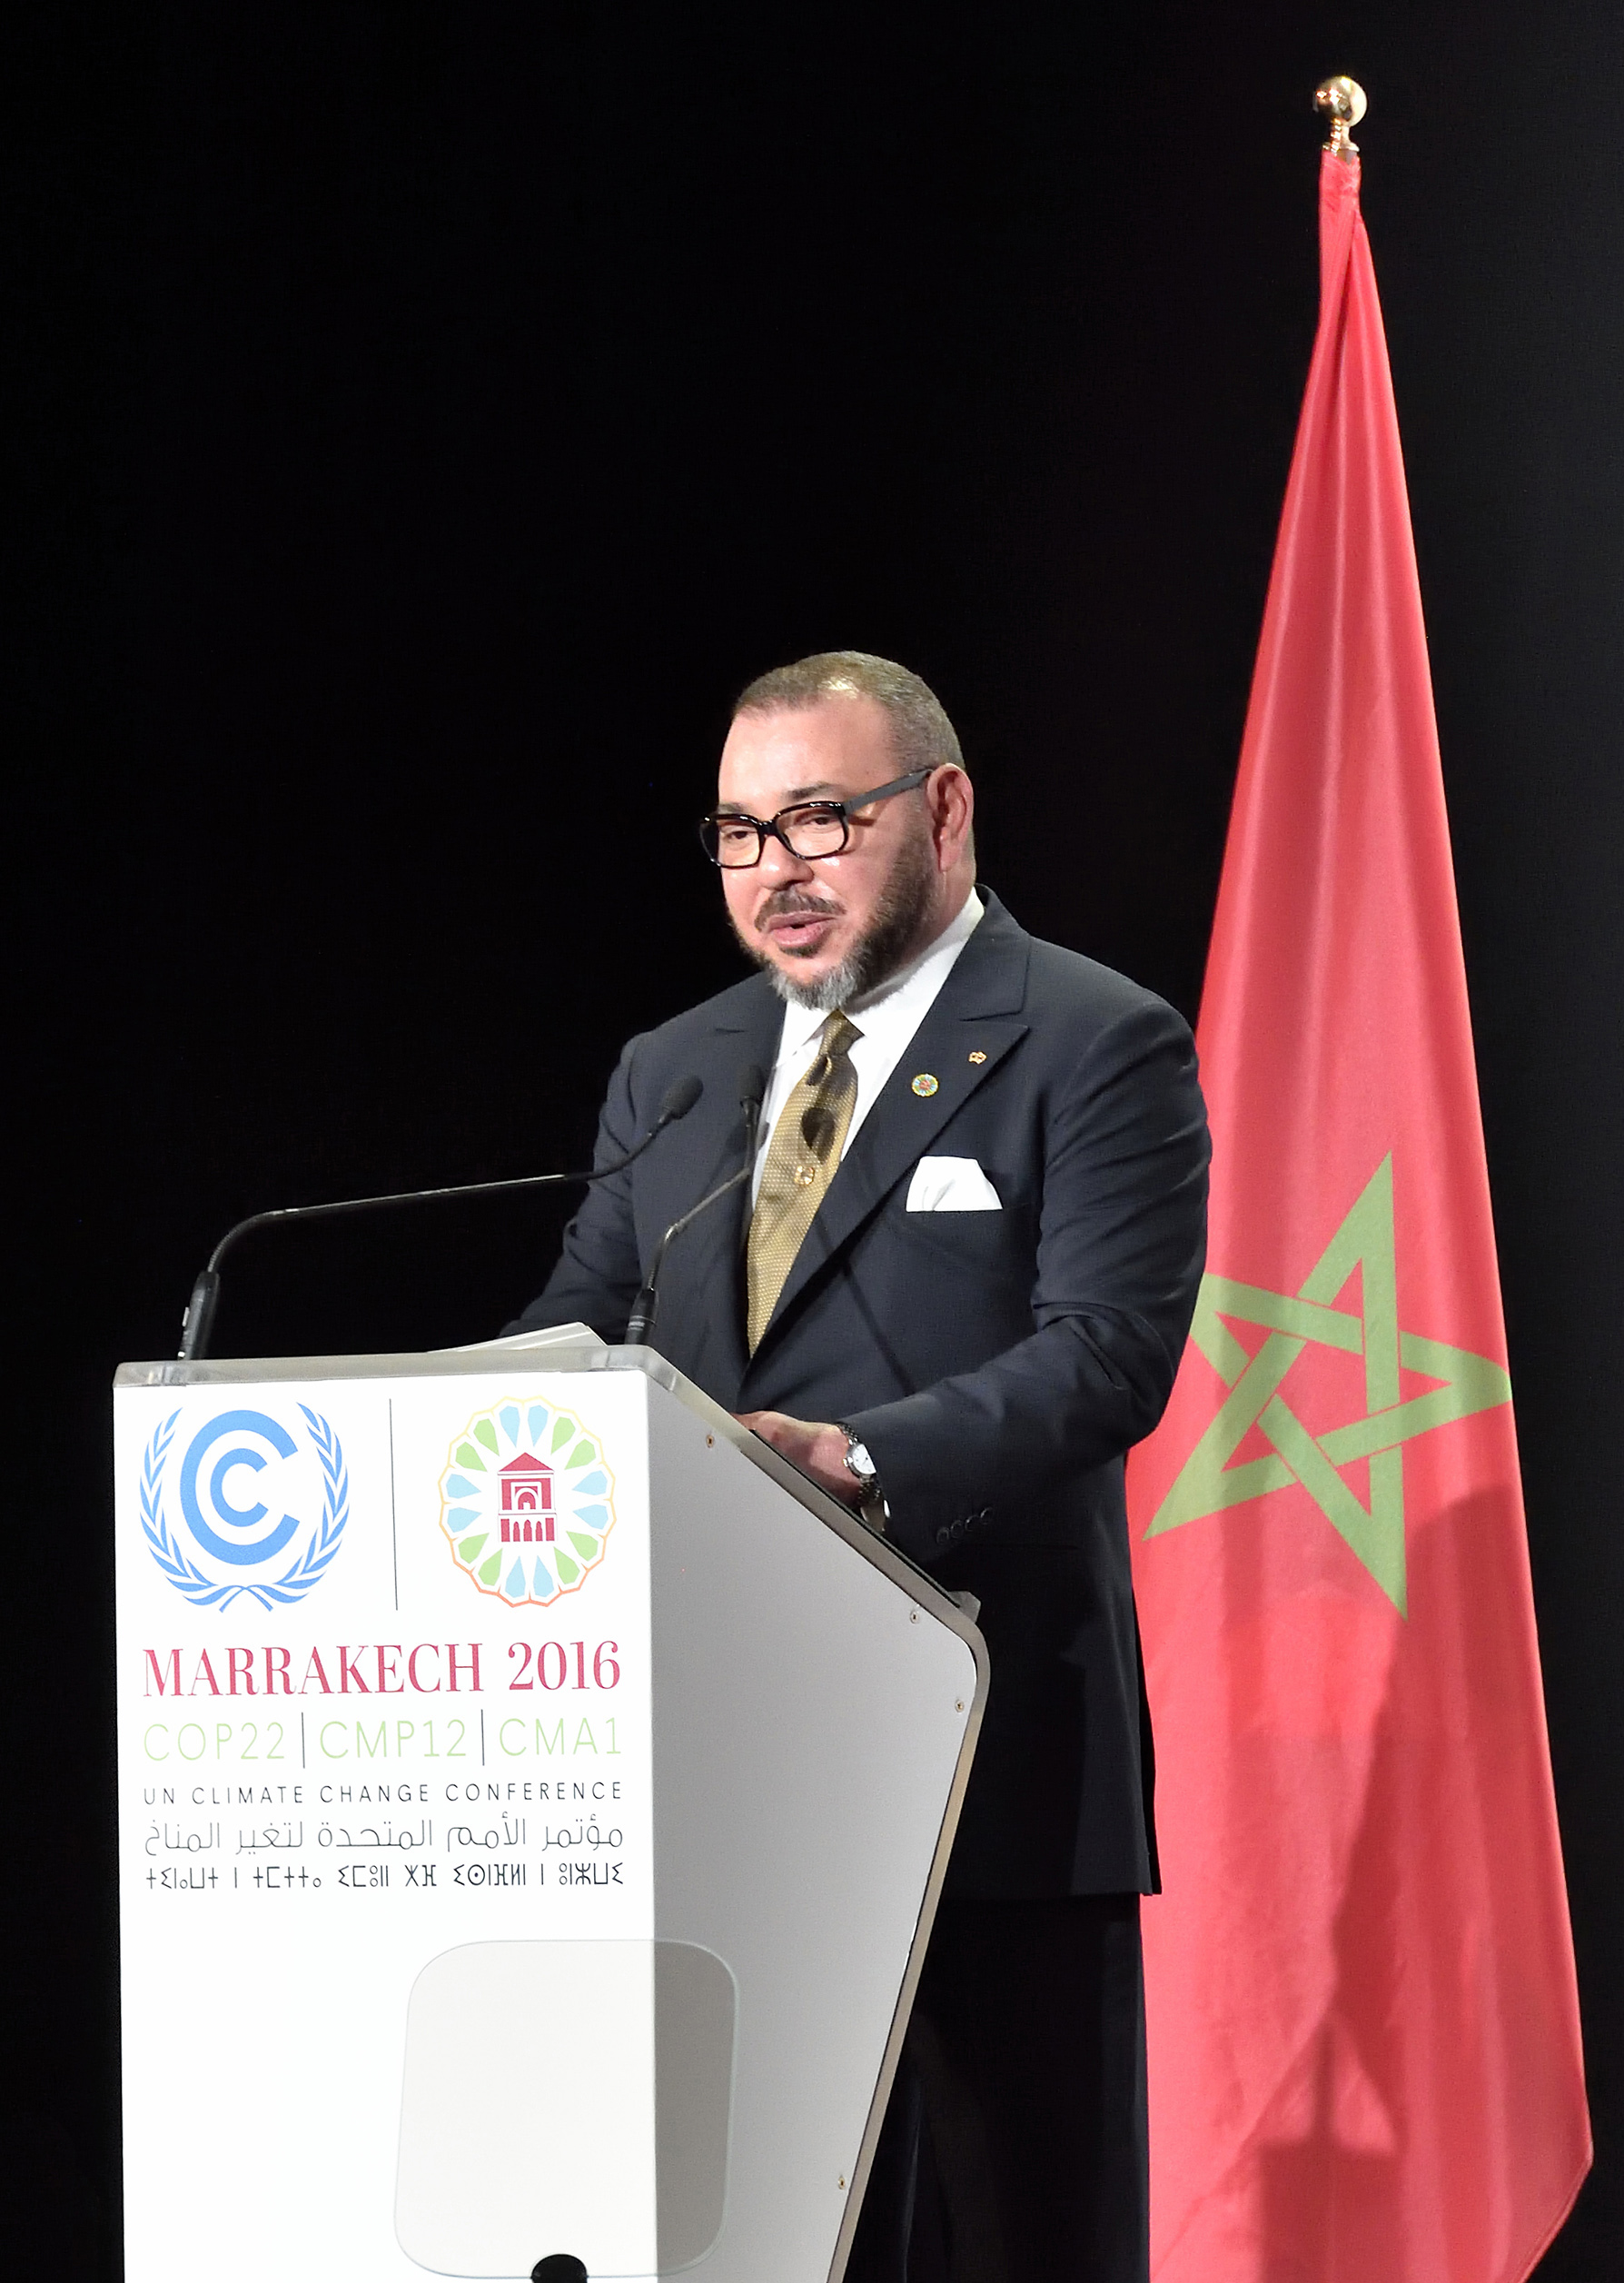 SM le Roi Mohammed VI, que Dieu L'assiste, prononce mardi (15/11/16) un Discours devant la Séance solennelle de Haut Niveau de la 22eme session de la Conférence des Parties à la Convention Cadre des Nations Unies sur le Changement Climatique (COP 22) qui se tient à Marrakech du 07 au 18 novembre.